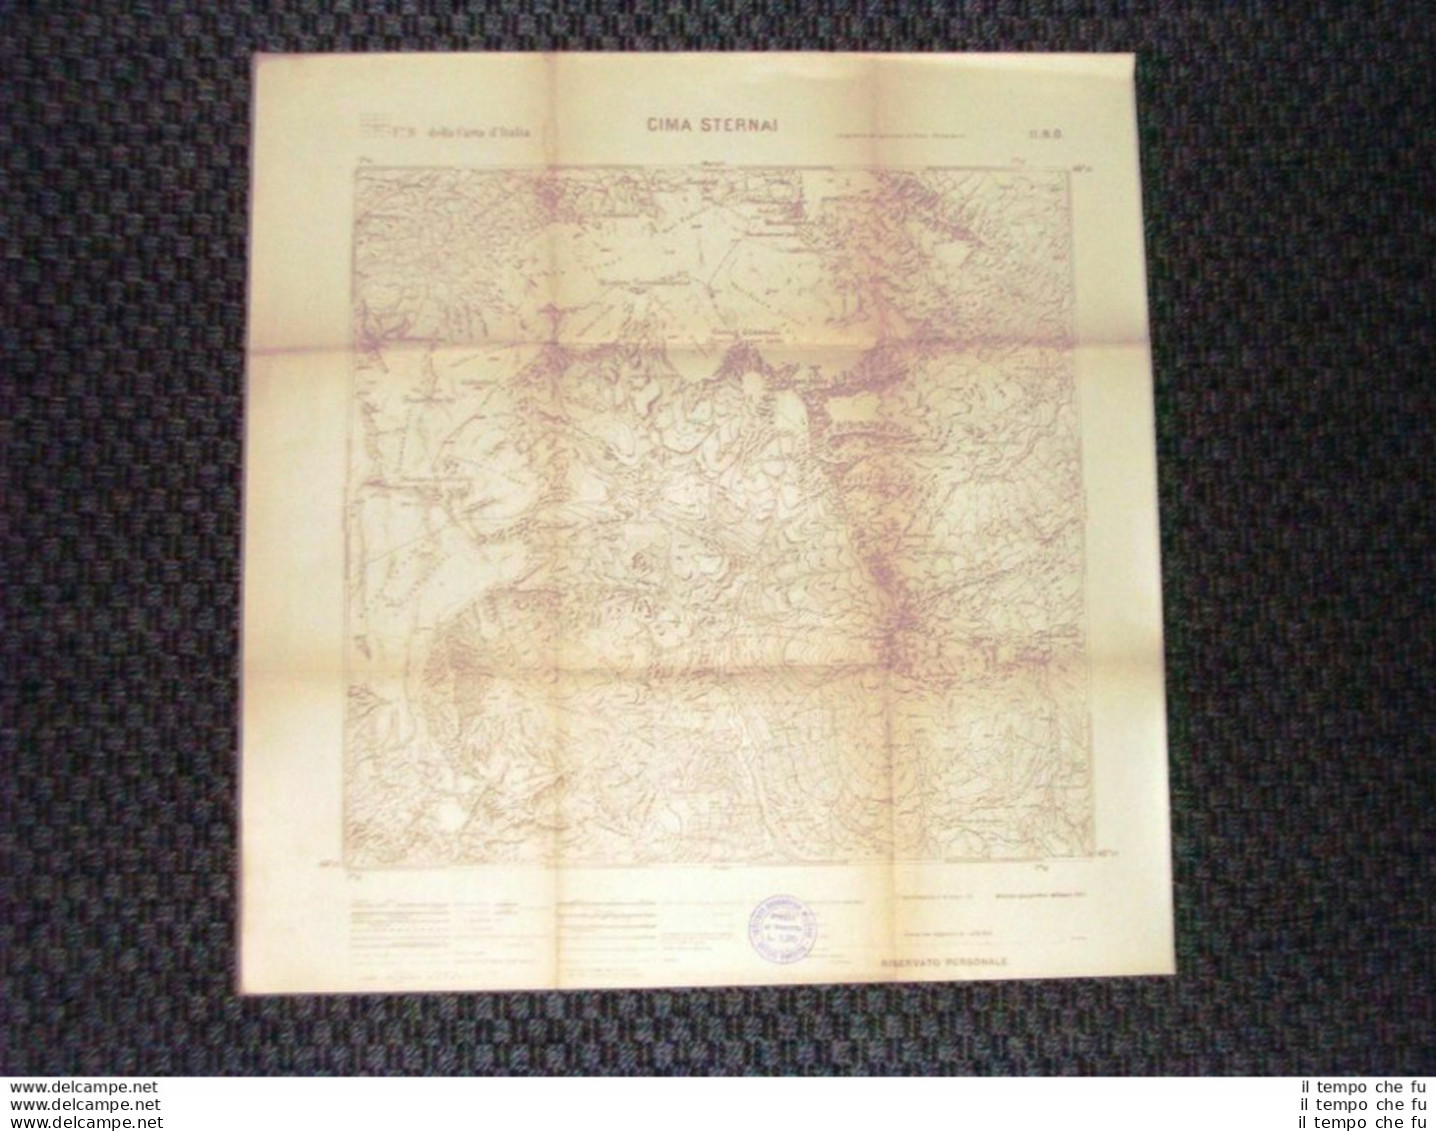 Grande Carta Topografica Cima Sternai O Hintere Eggenspitze Dettagliatissima IGM - Geographical Maps